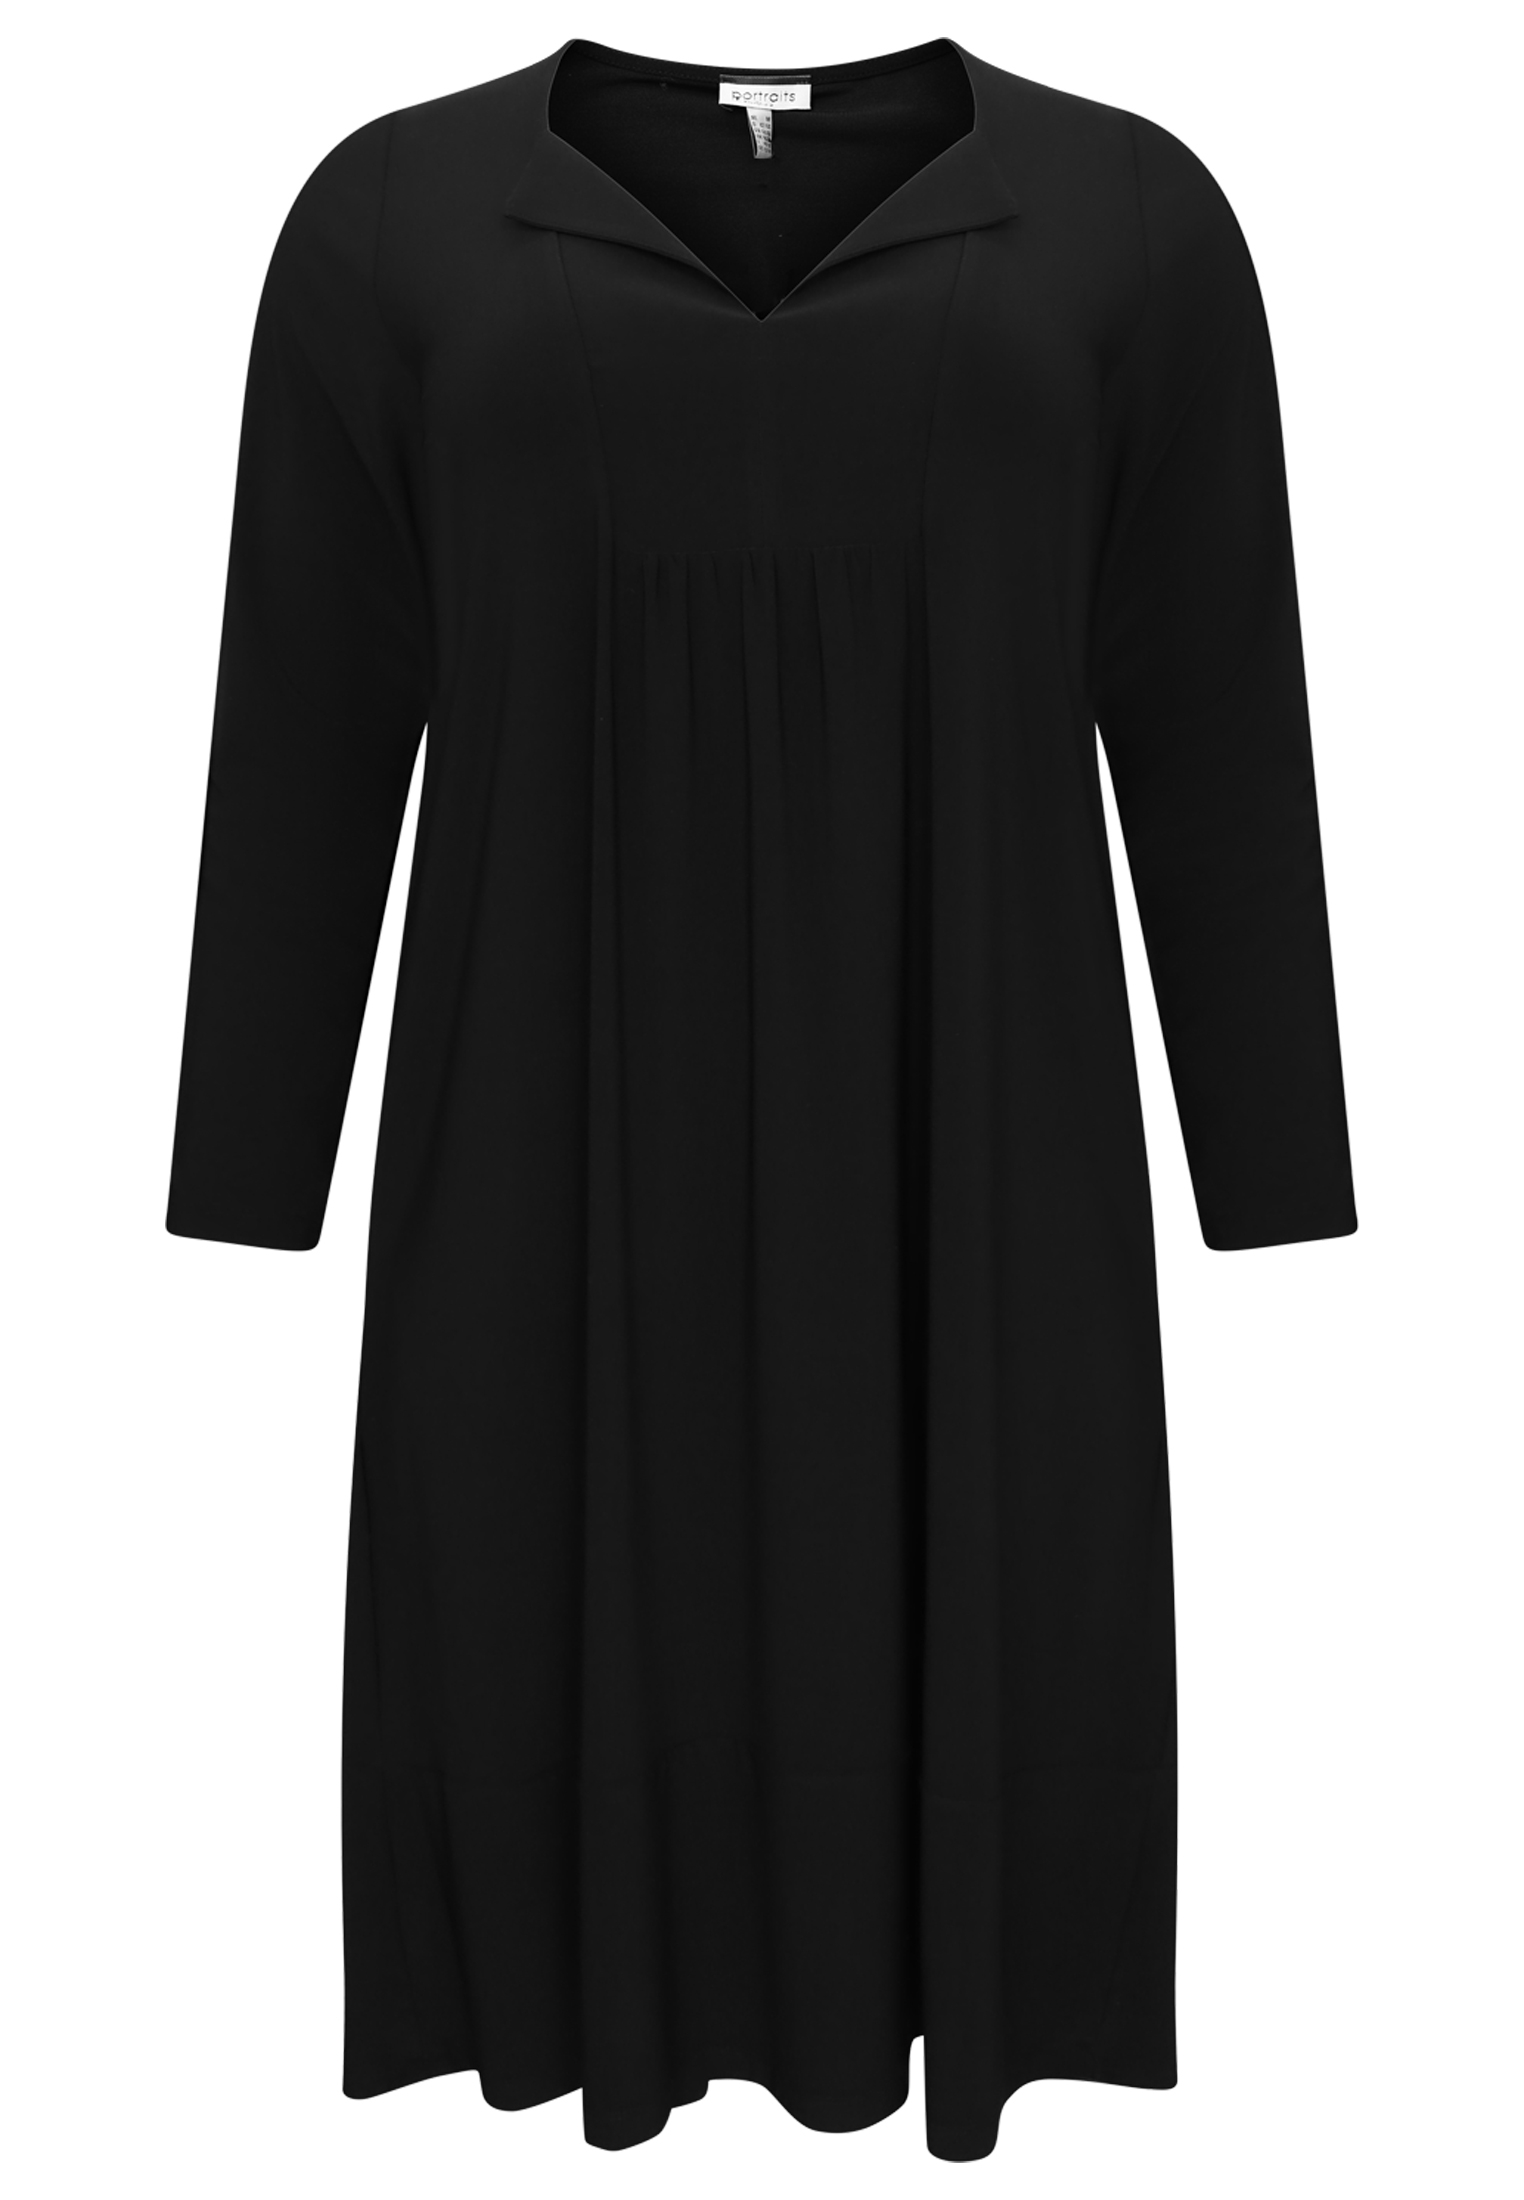 Dress slit neckline DOLCE - black 